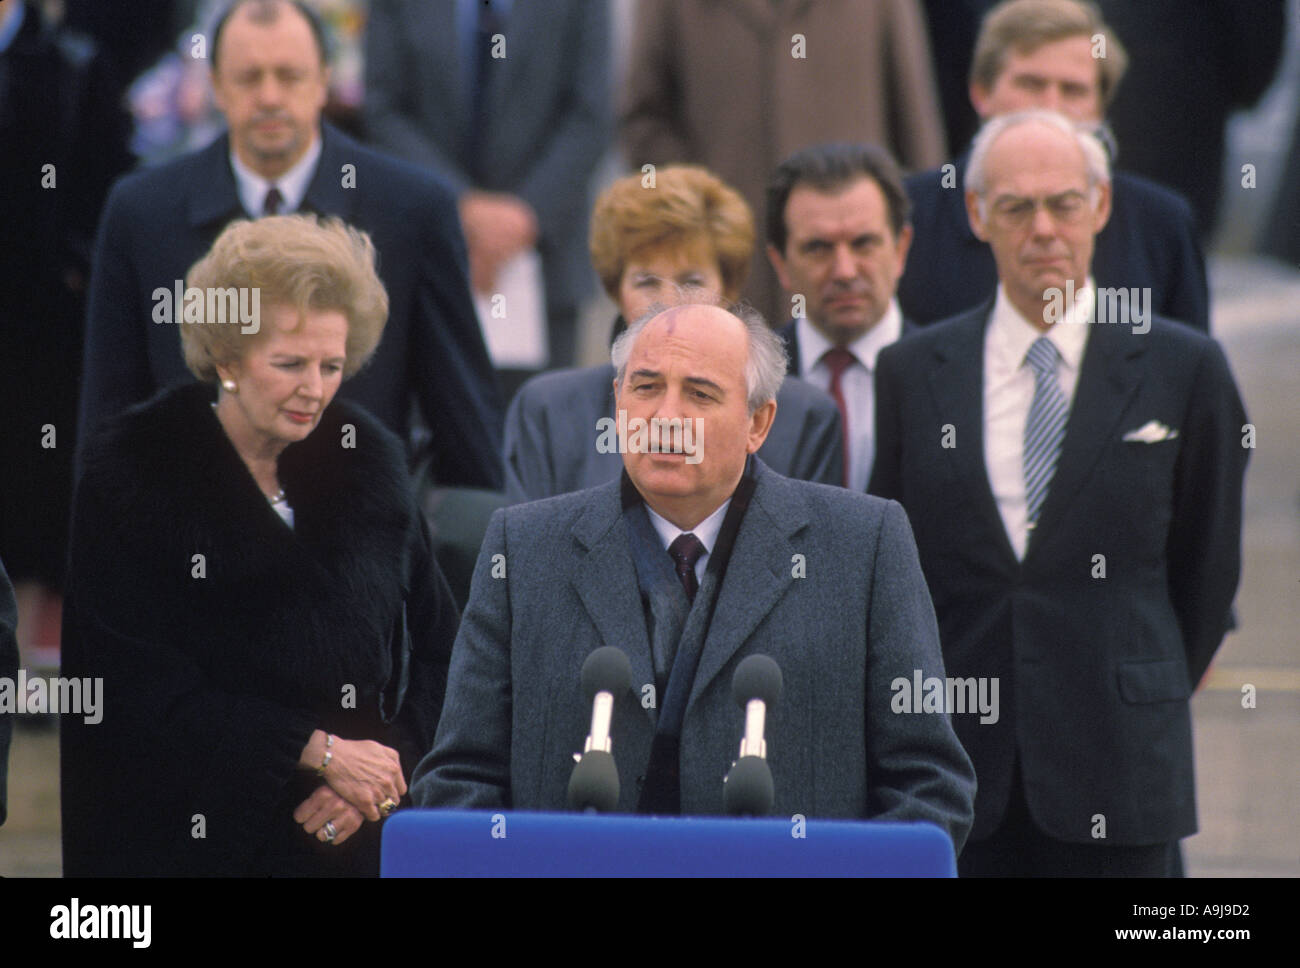 Premierministerin Maggie Thatcher mit russischen Präsidenten Gorbachev bei Pressekonferenz außerhalb 10 Downing St London 1989 Stockfoto